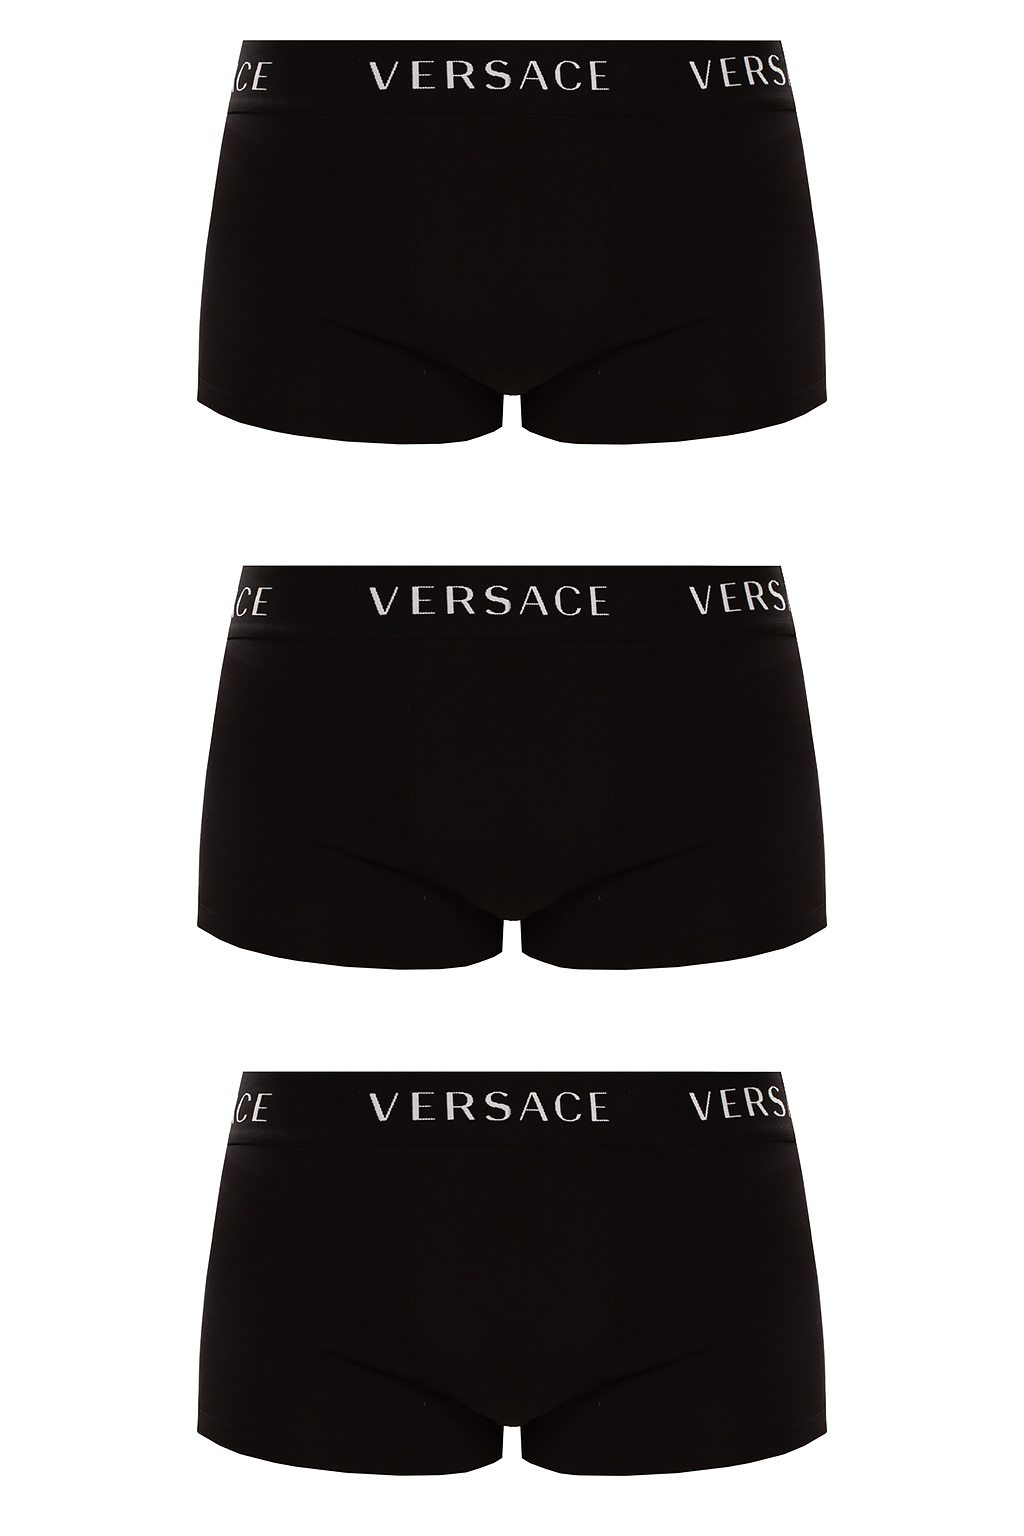 versace underwear 3 pack